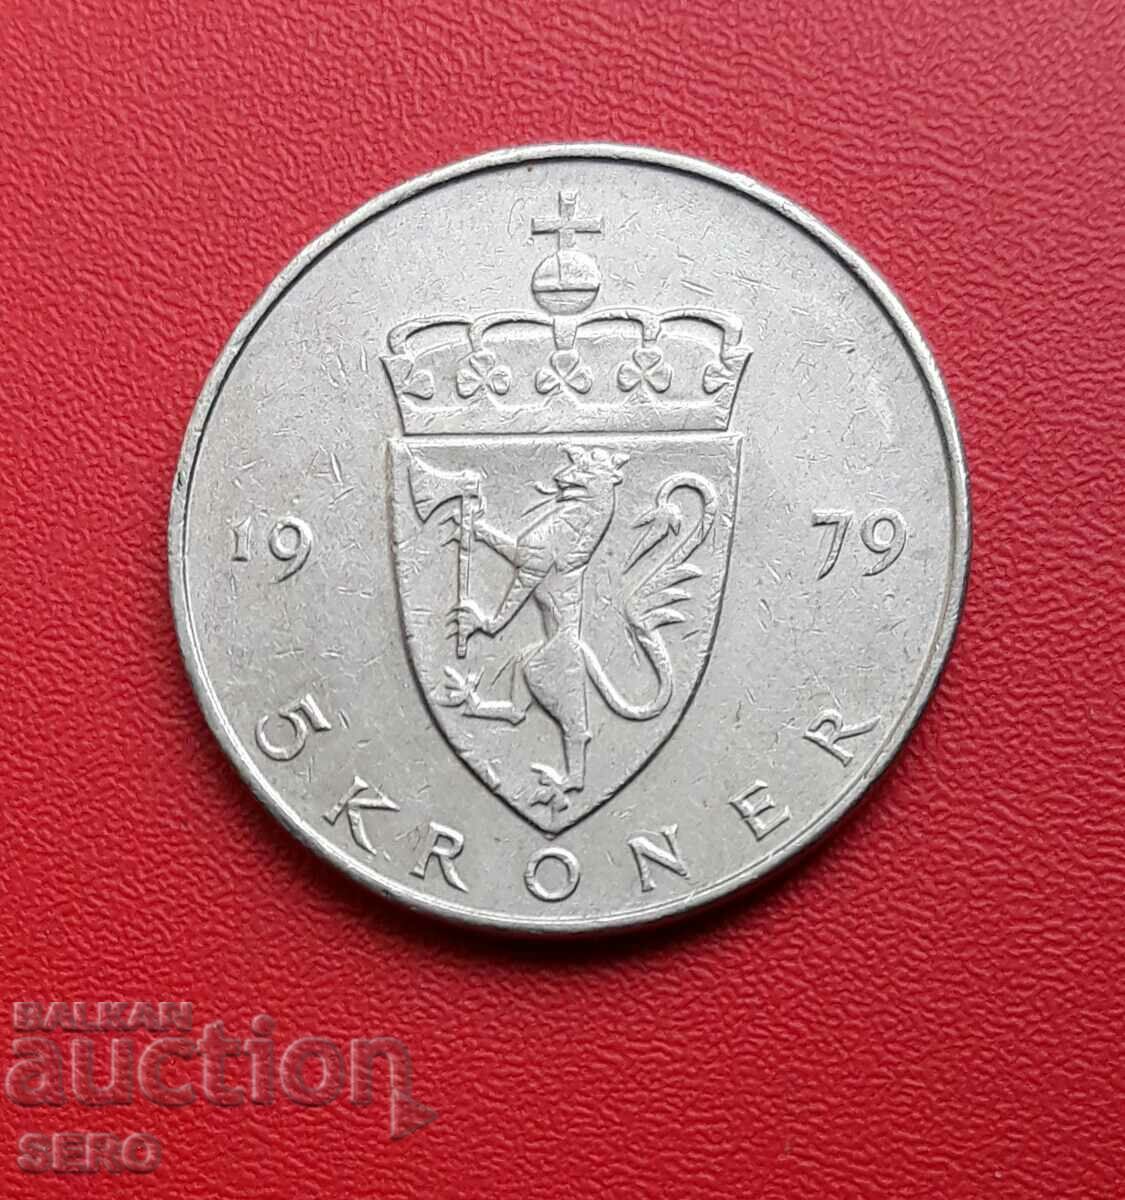 Norway-5 kroner 1979